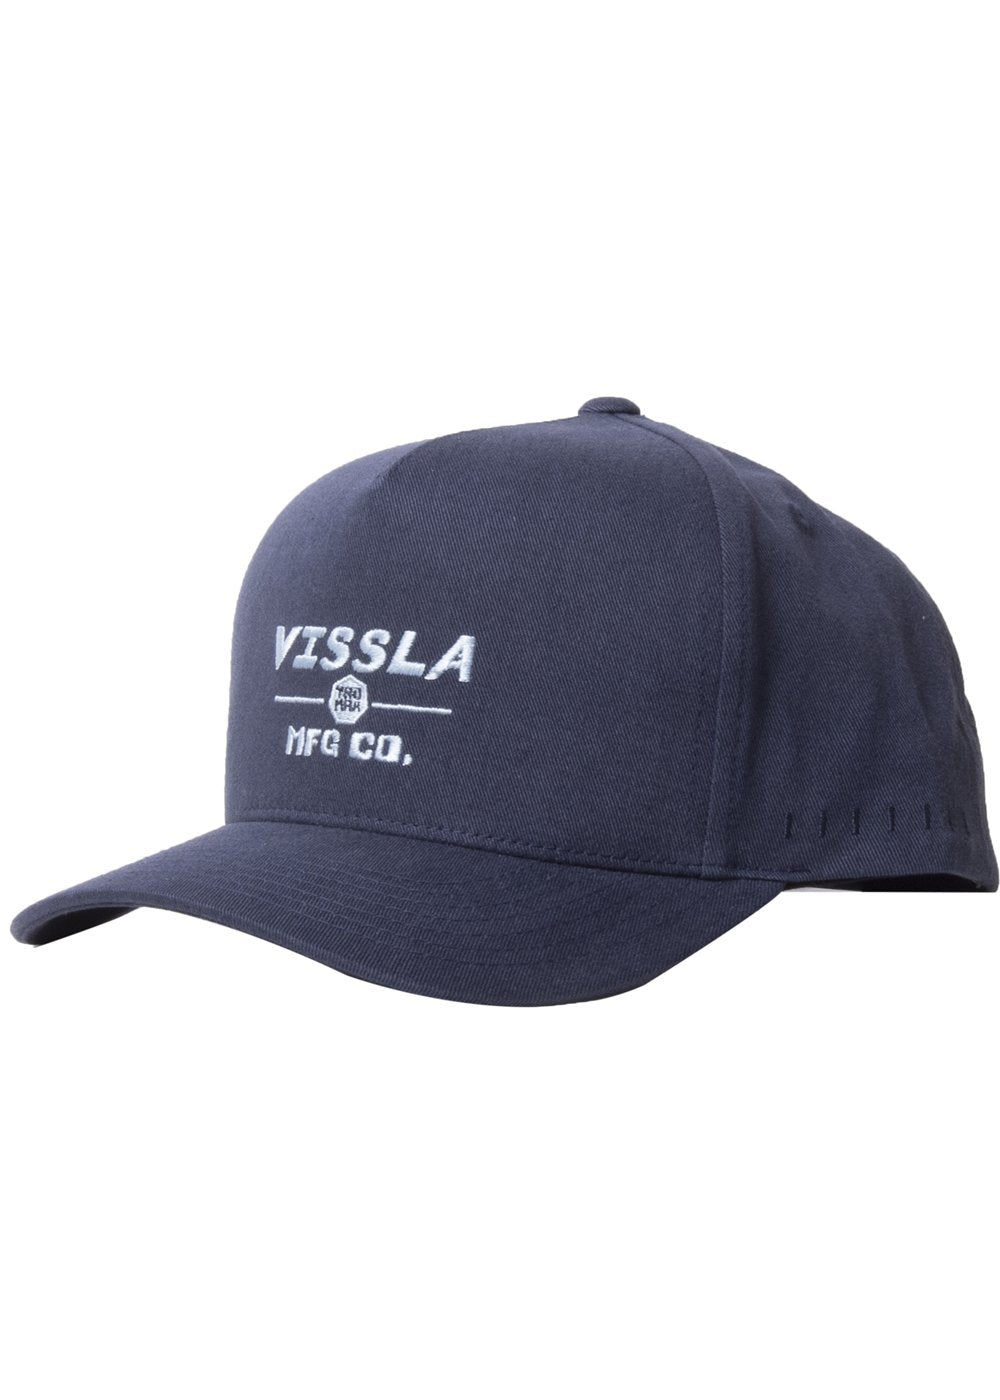 Vissla Sevens Hat (Dark Naval) - KS Boardriders Surf Shop